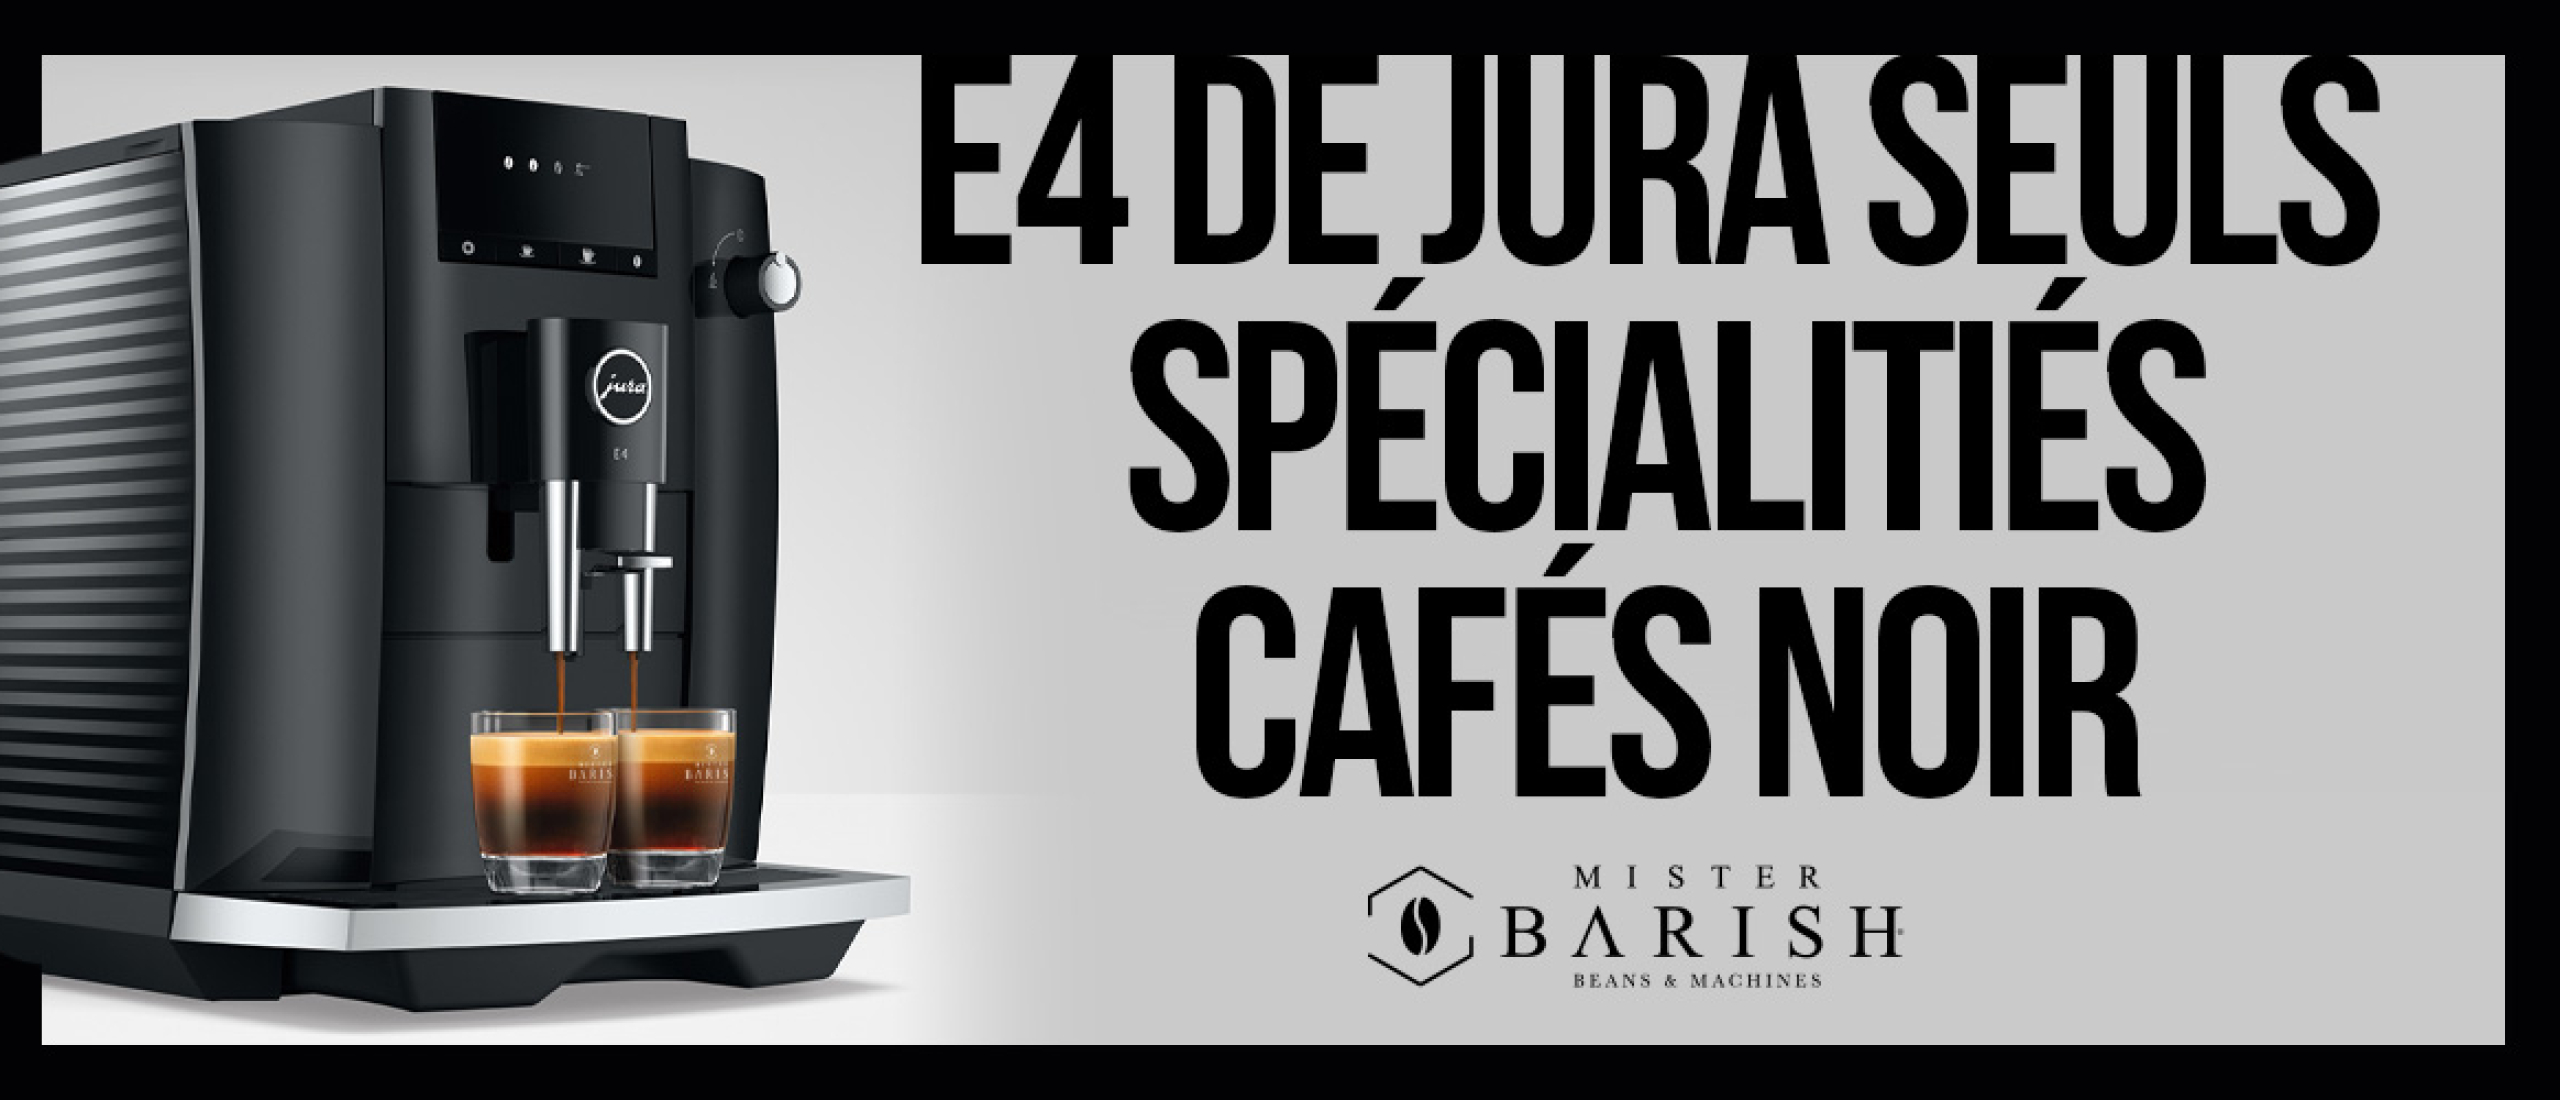 La Jura E4, c'est du café à 100% avec les dernières technologies.